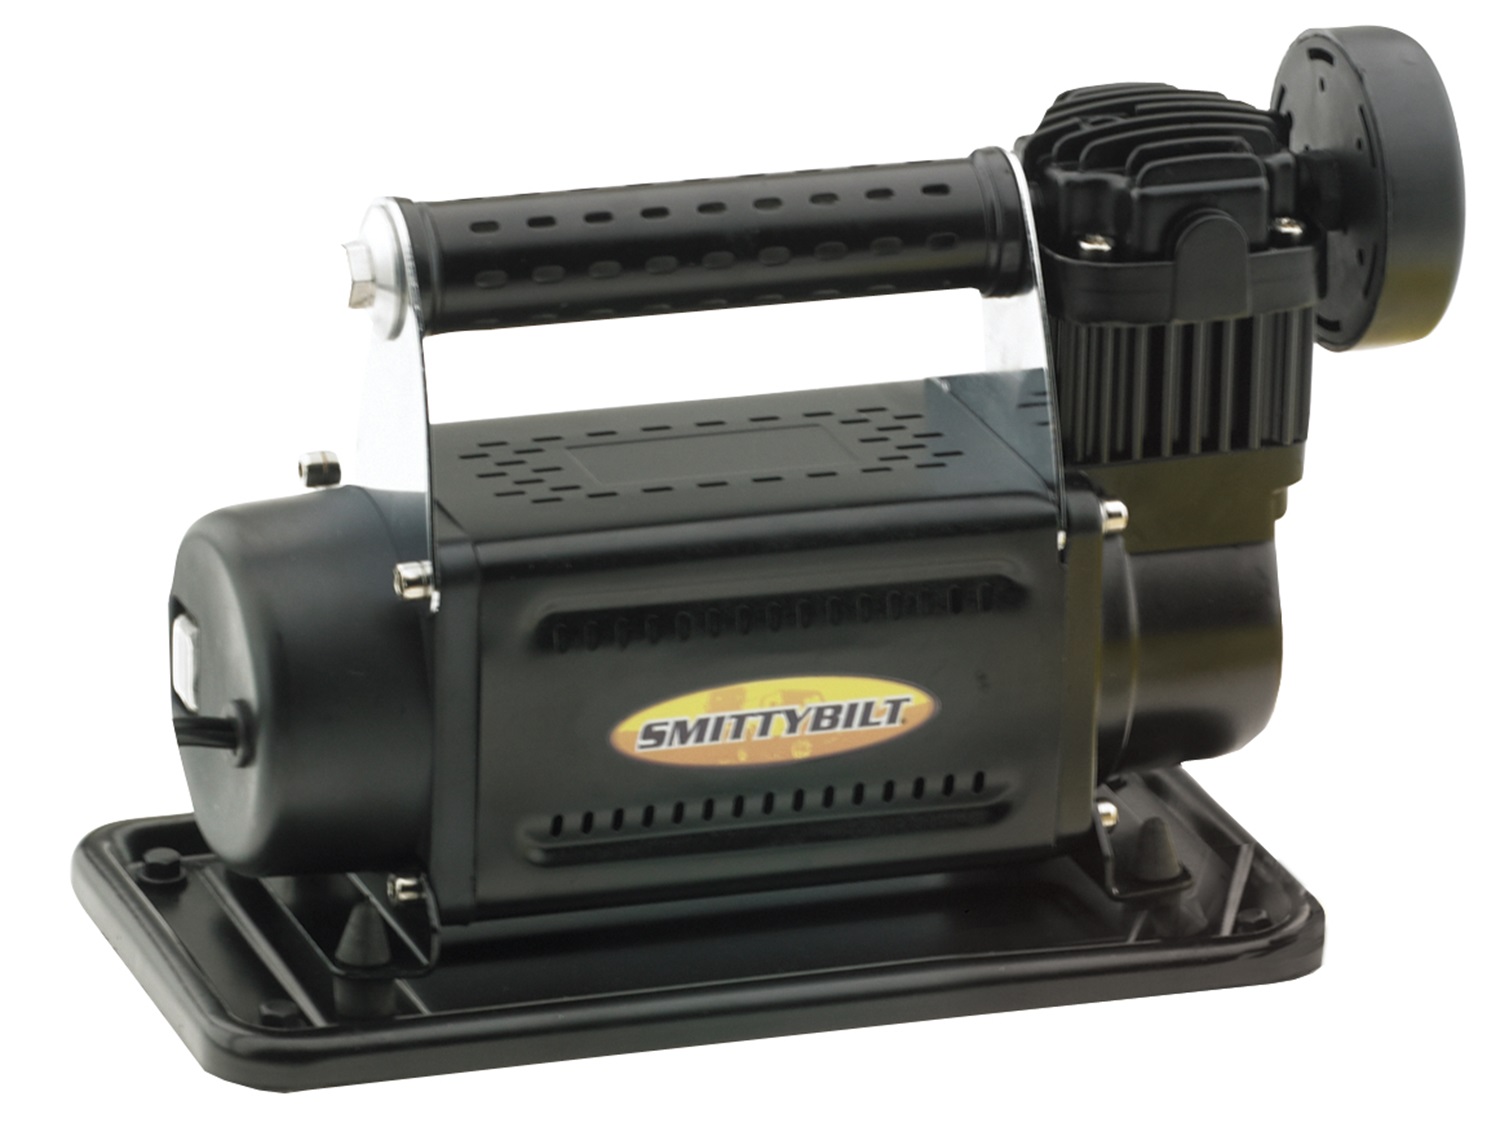 Smittybilt Smittybilt 2780 High Performance Air Compressor